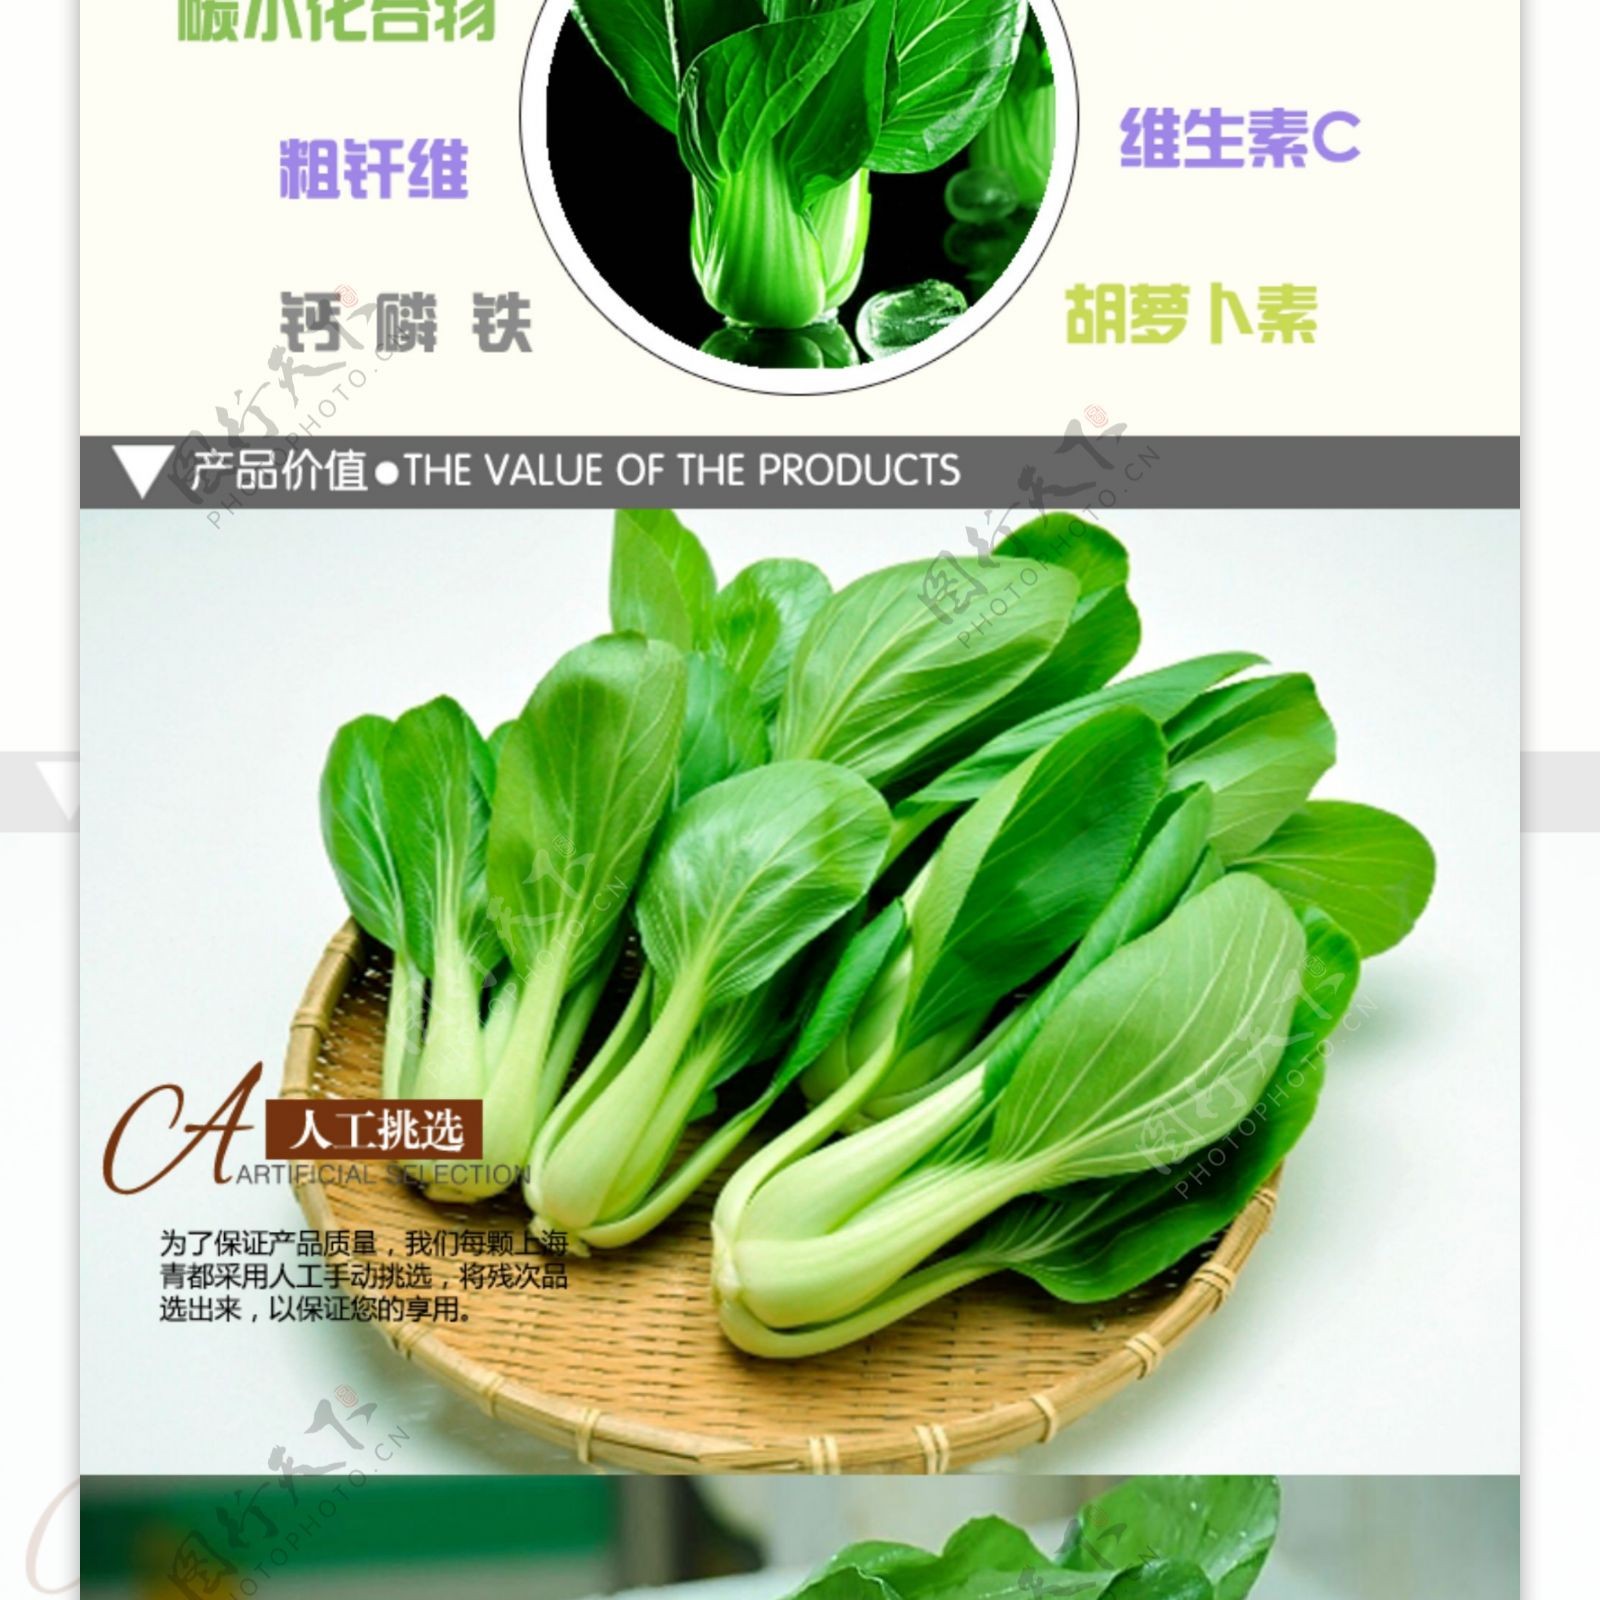 蔬菜banner